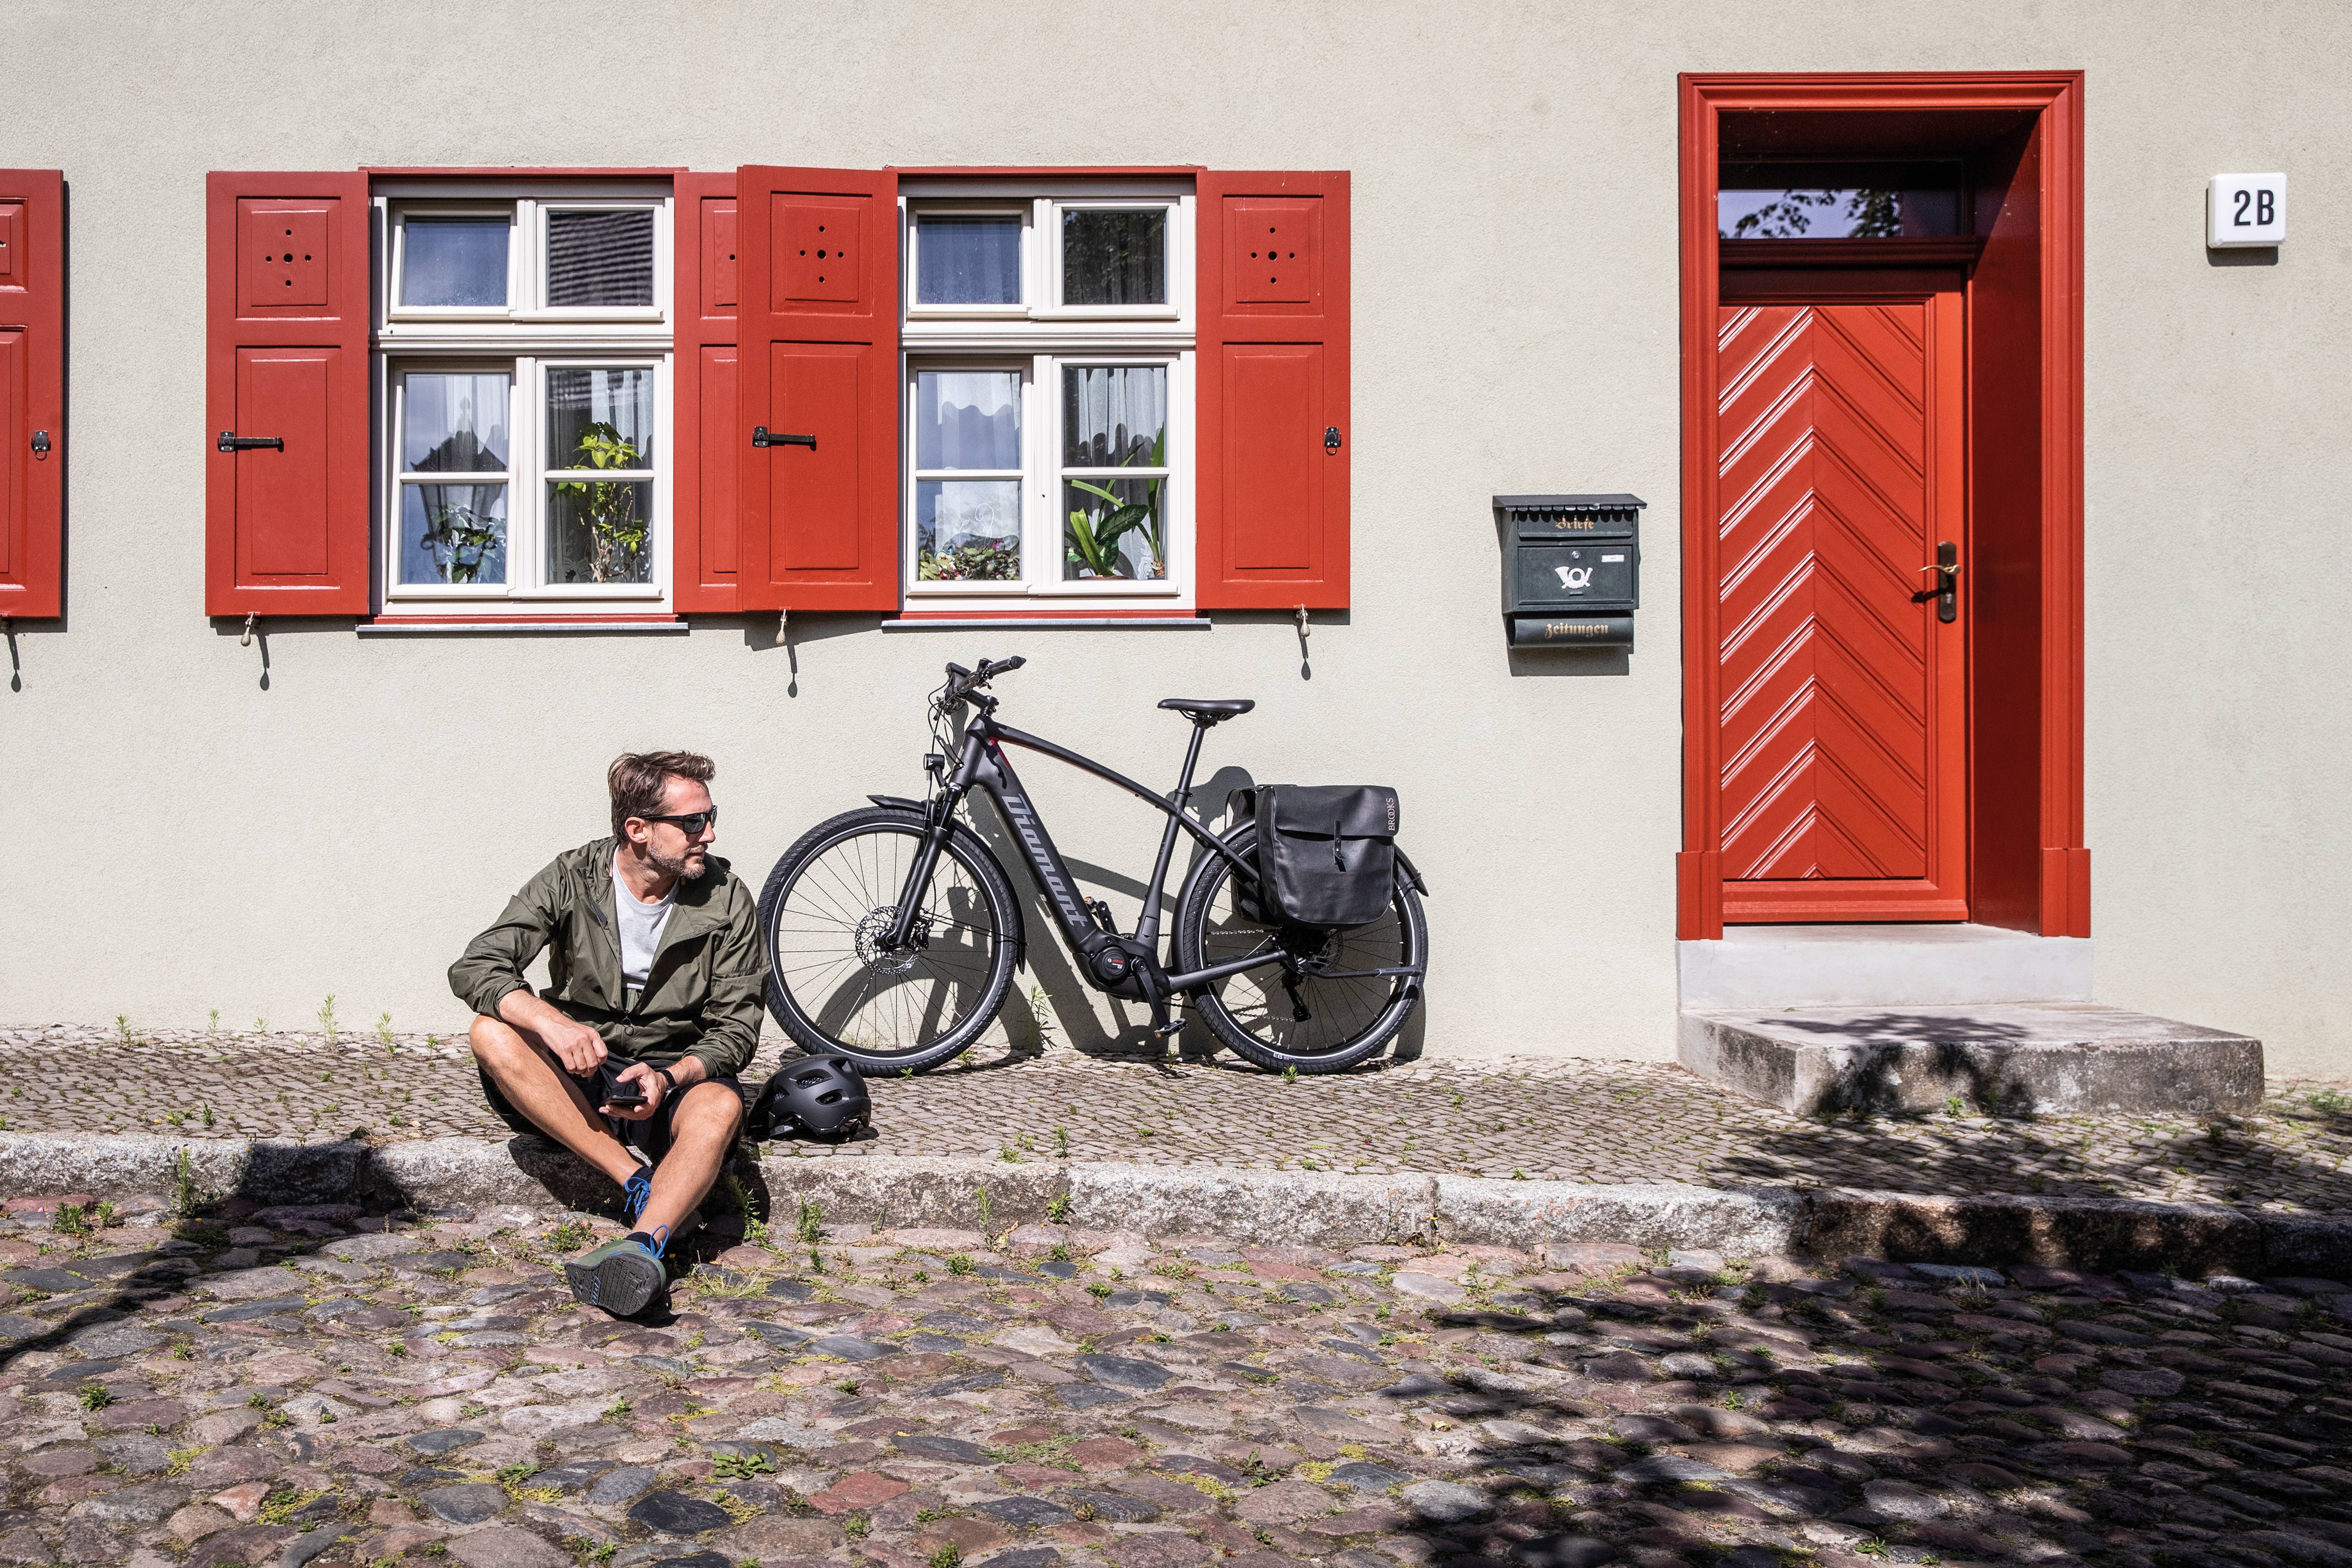 Mann sitzt auf Bordstein Fahrrad parkt dahinter an Hauswand